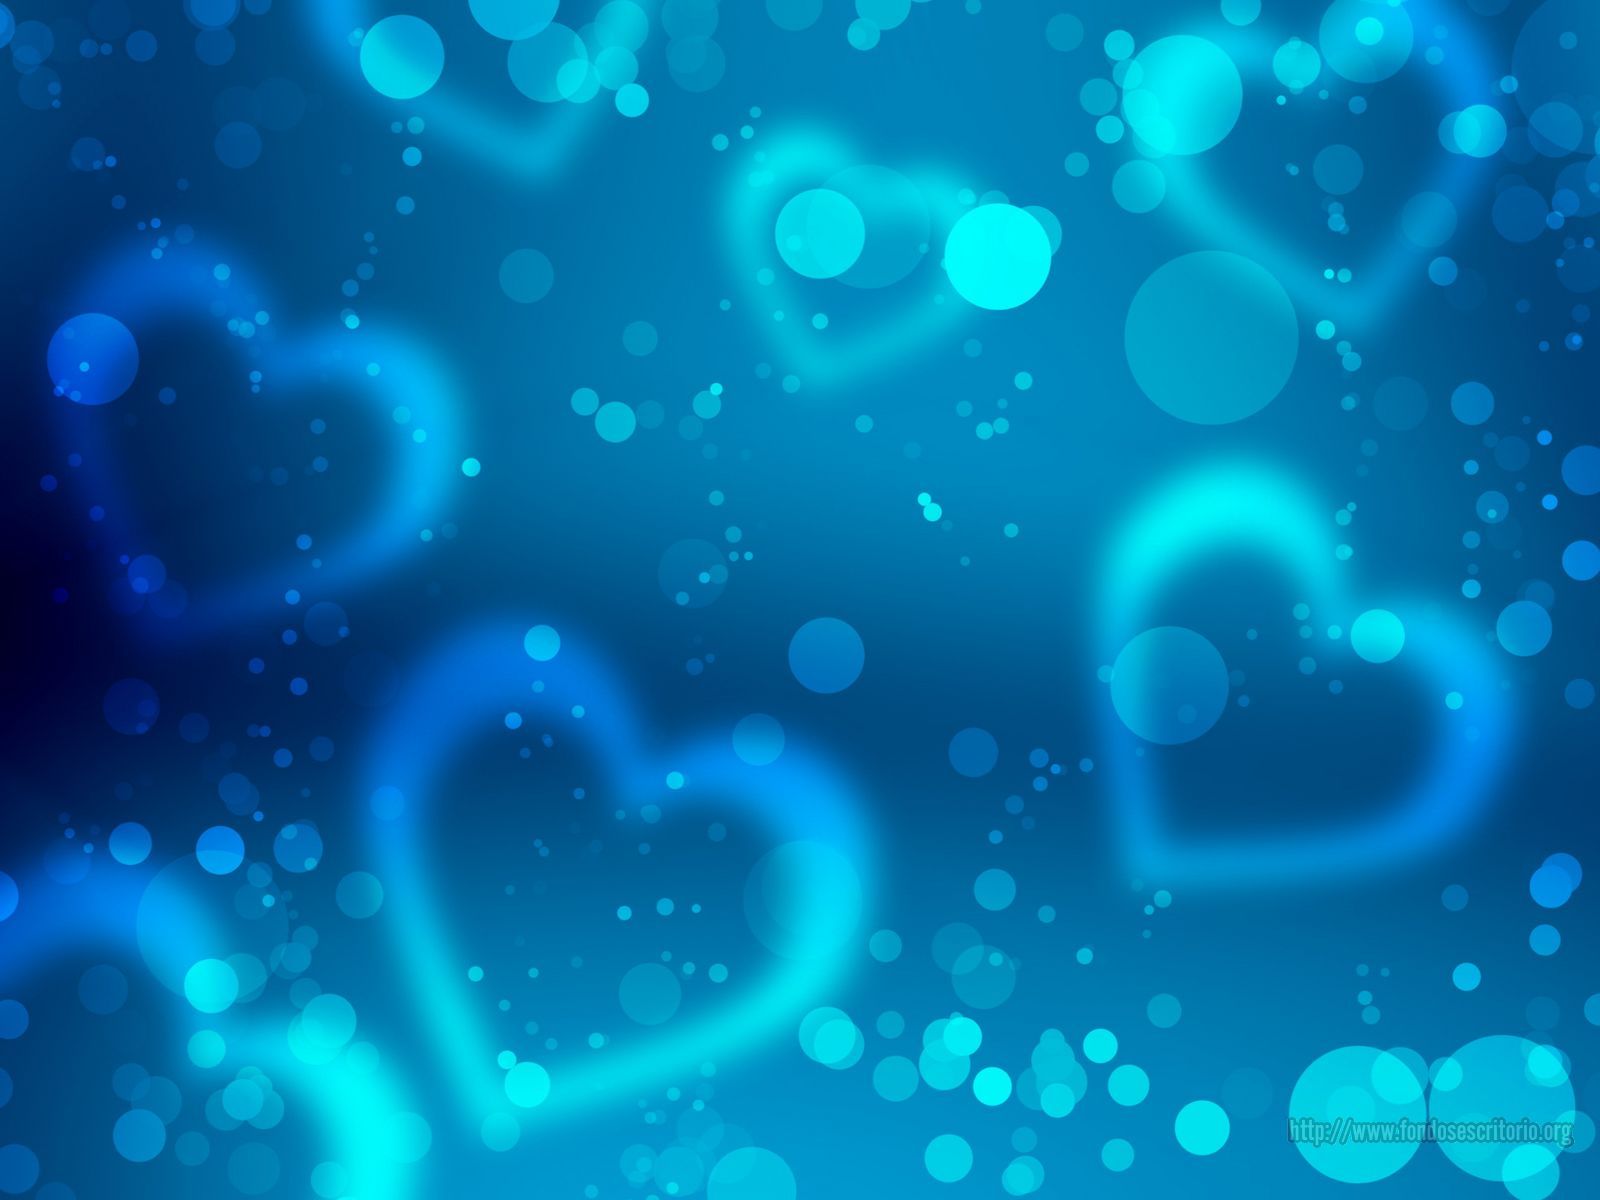 Wallpaper Gratis - Blue Heart Background Hd - HD Wallpaper 